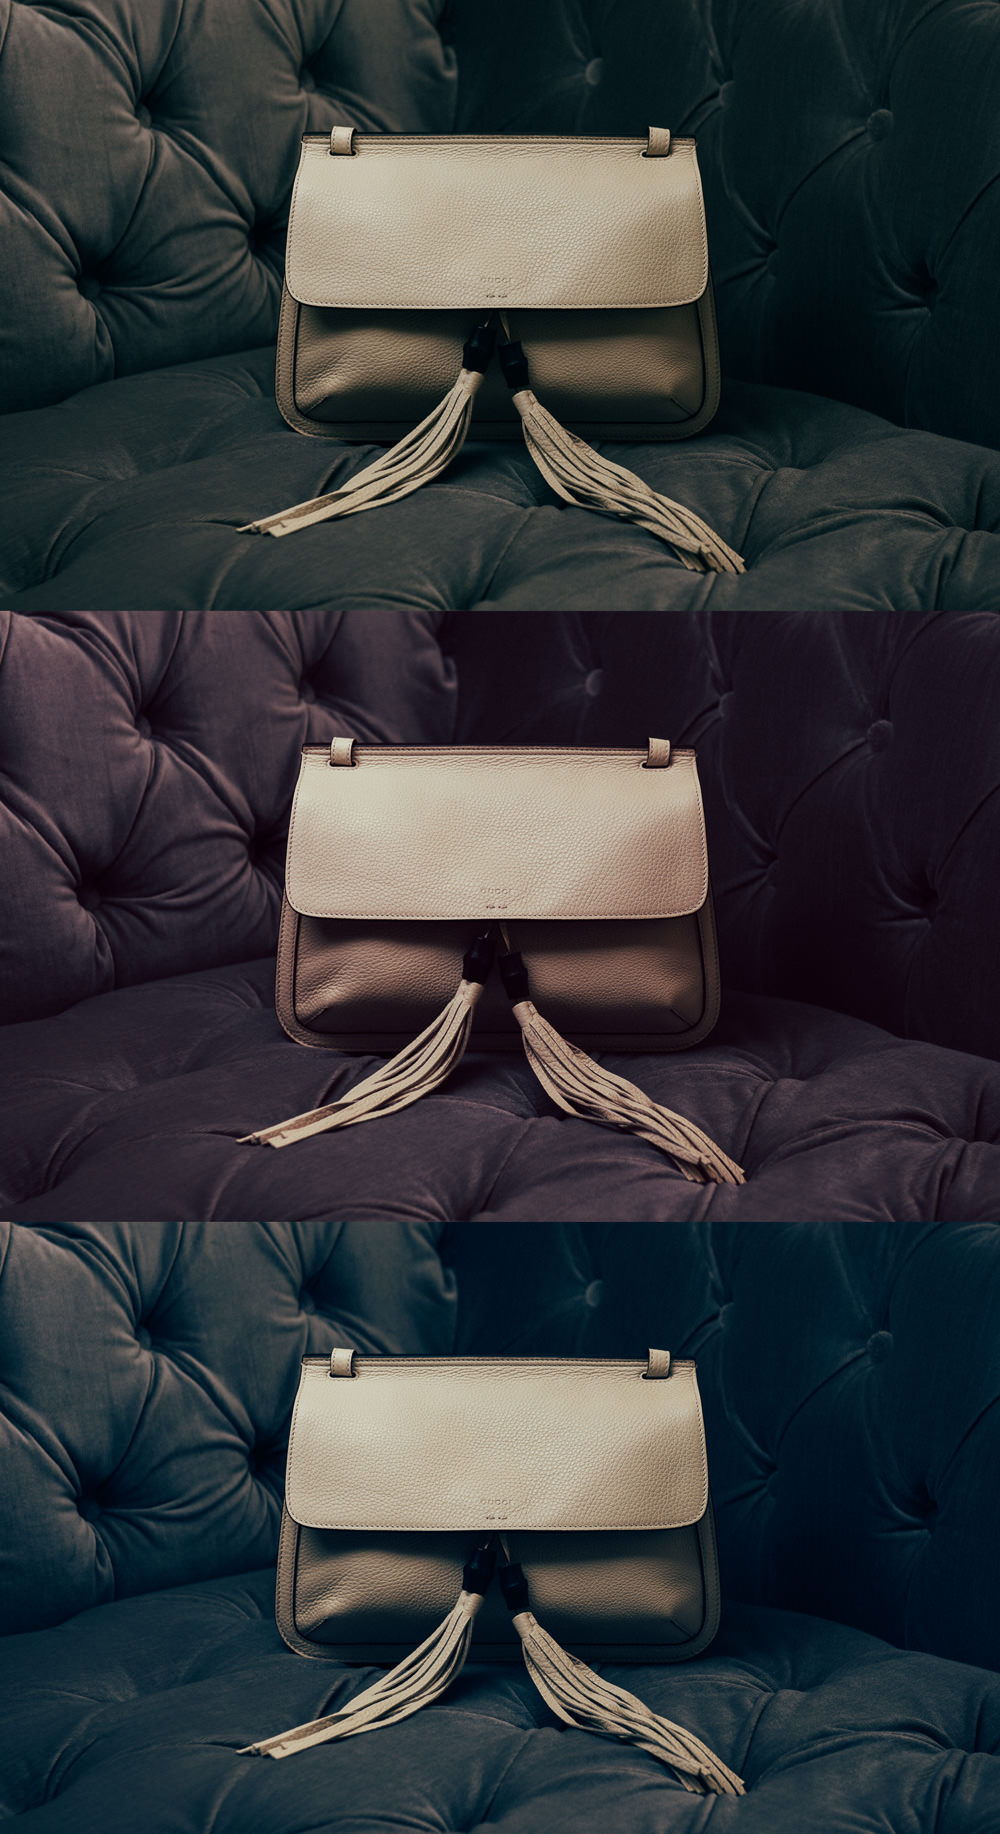 Gucci Bamboo Daily Shoulder Bag. $1,890 via Gucci.